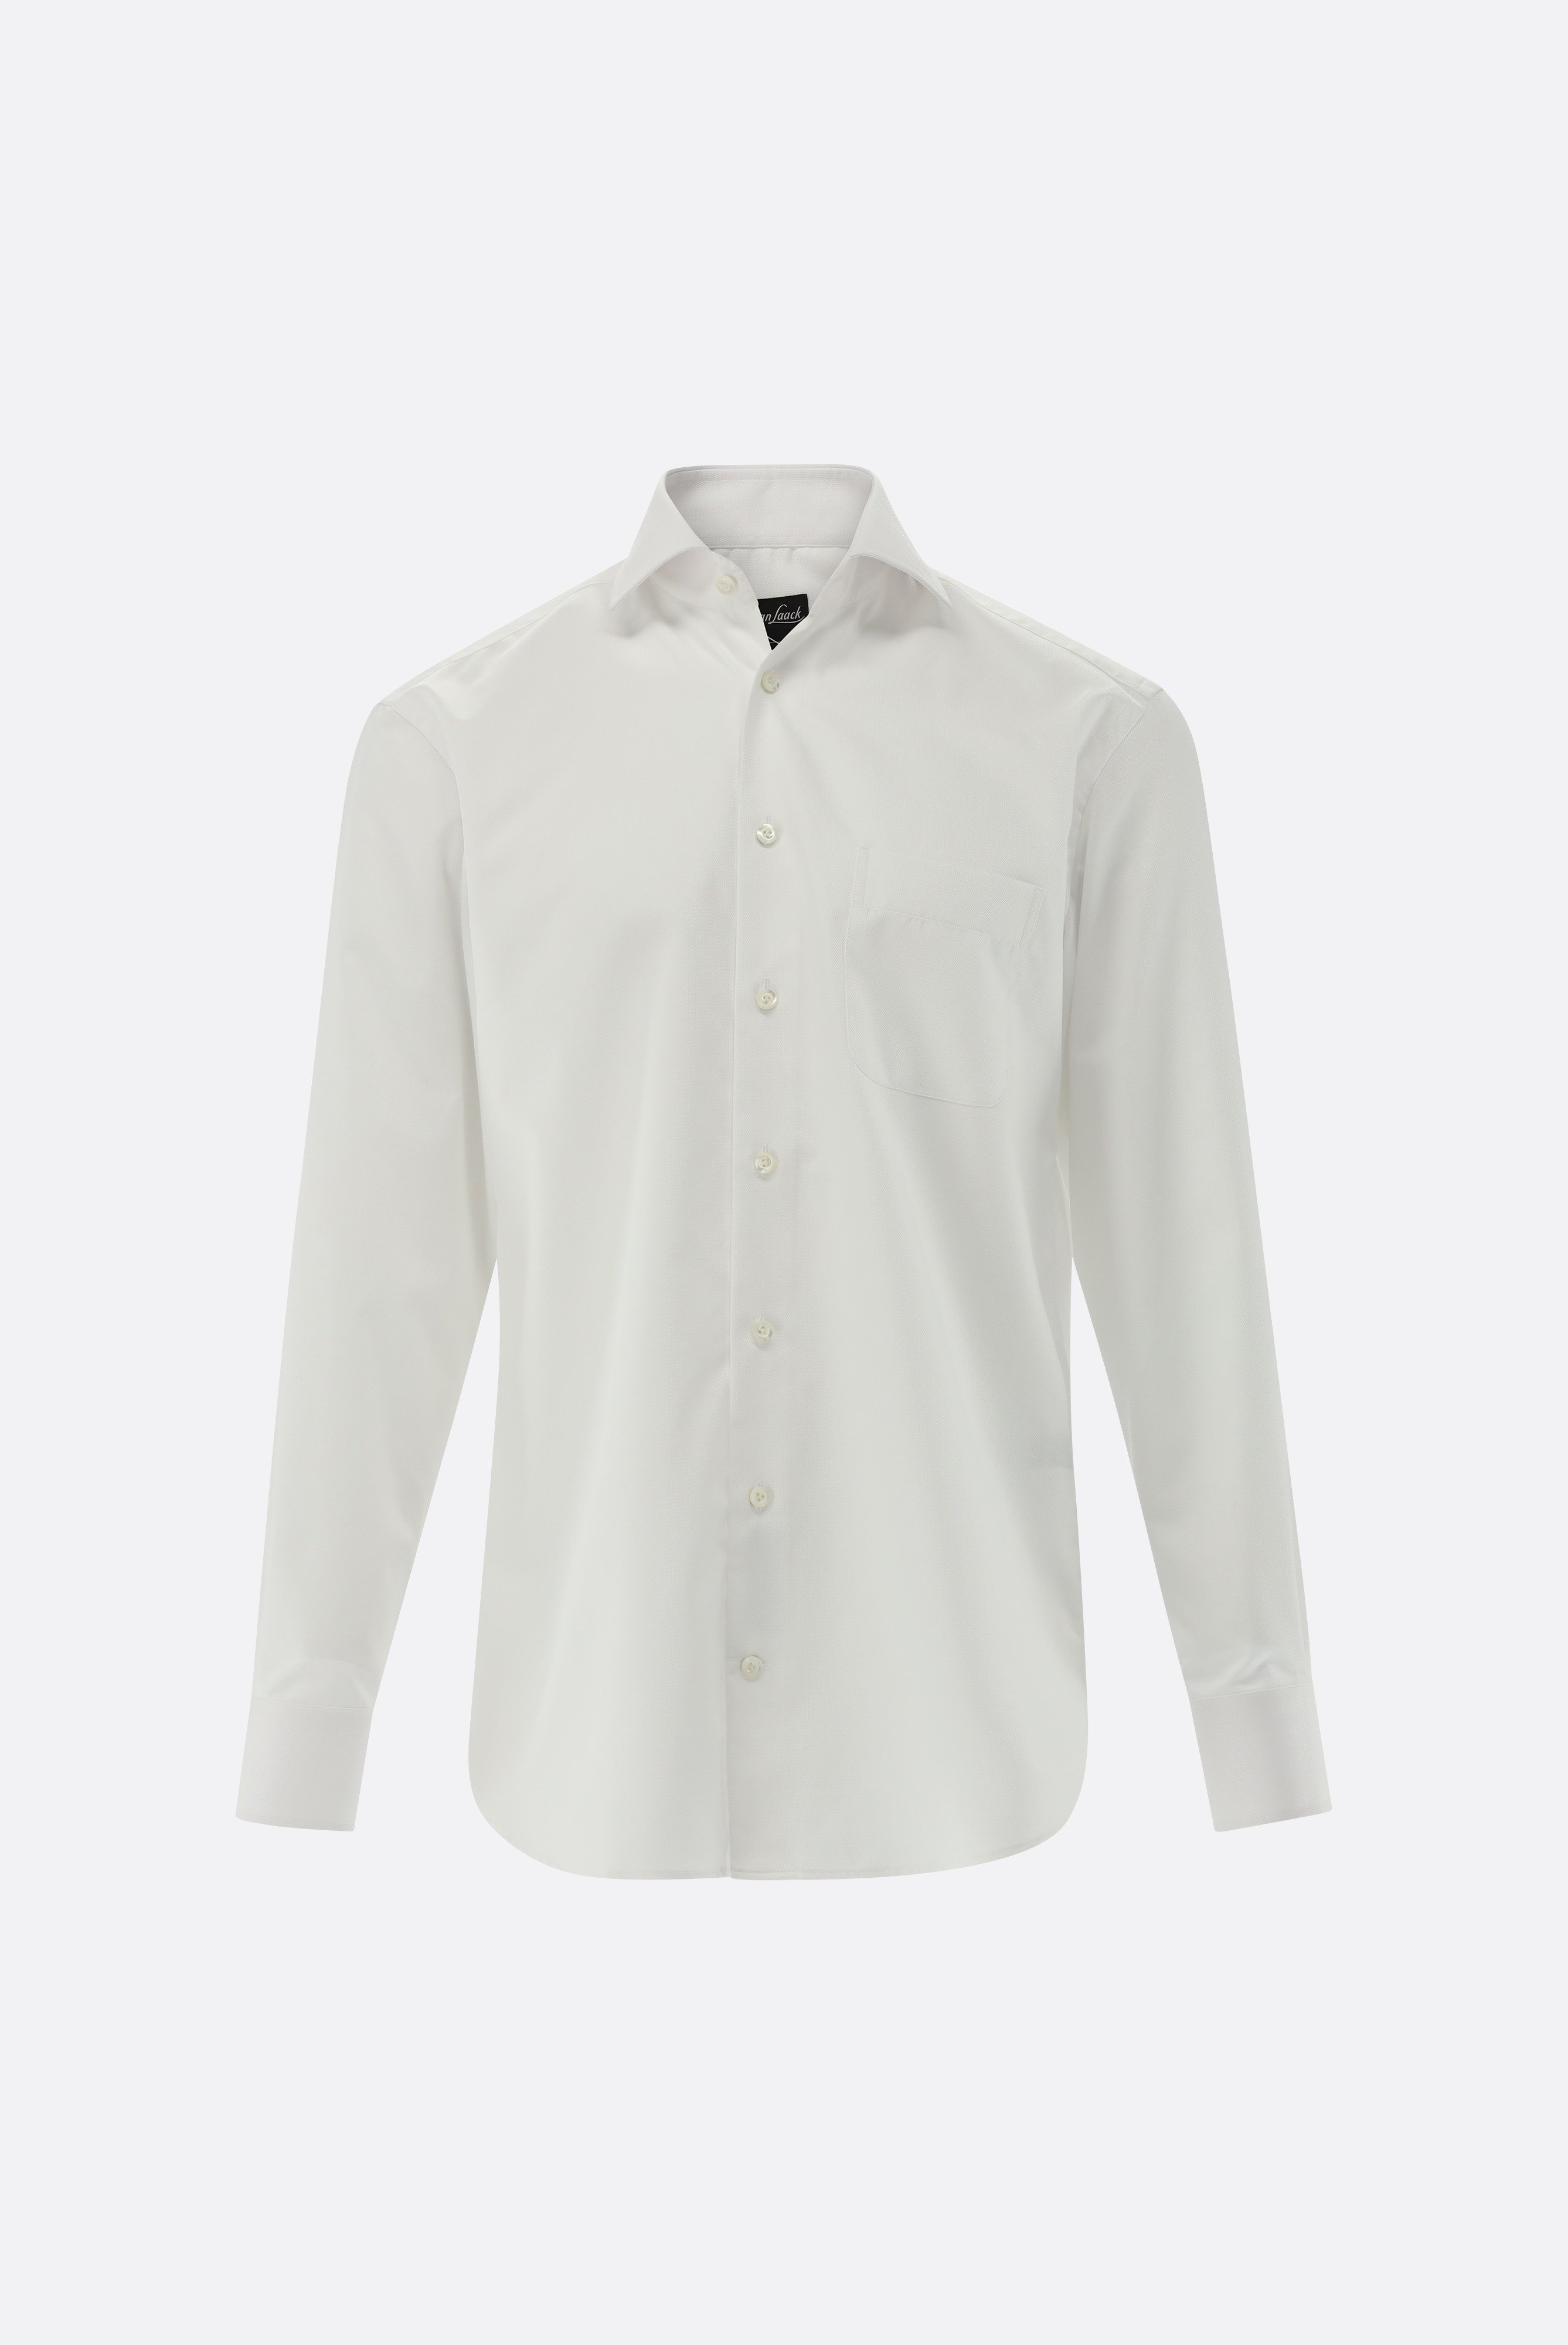 Bügelleichte Hemden+Bügelfreies Twil Hemd mit Struktur Comfort Fit+20.2021.BQ.150301.000.39